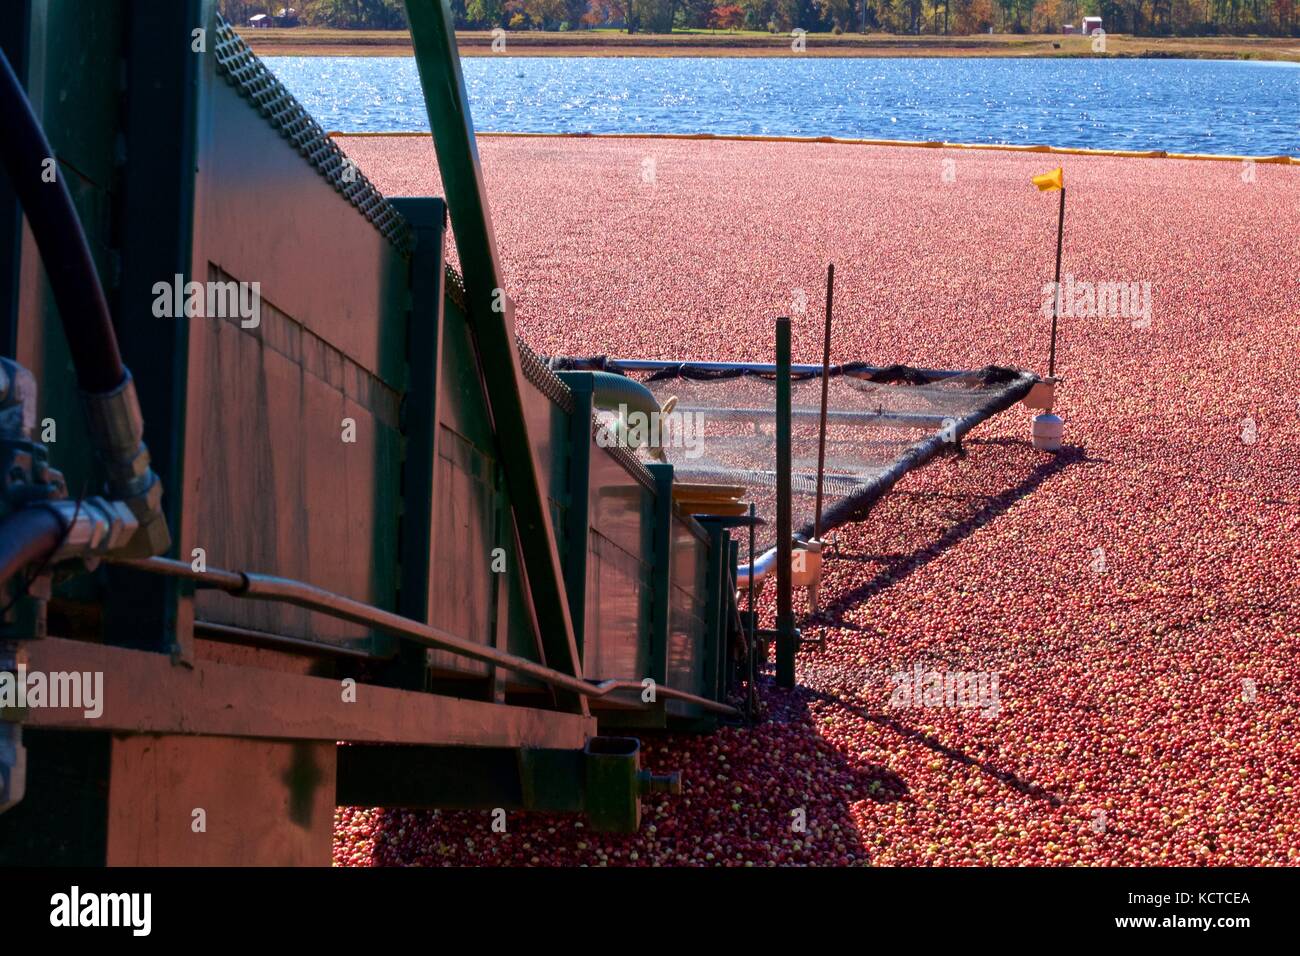 Octubre 21, 2012 - chatsworth, Nueva Jersey, EE.UU.: mirando hacia abajo por una cinta transportadora en un pantano de arándanos durante la cosecha húmeda equipmentagric agrícola. Foto de stock